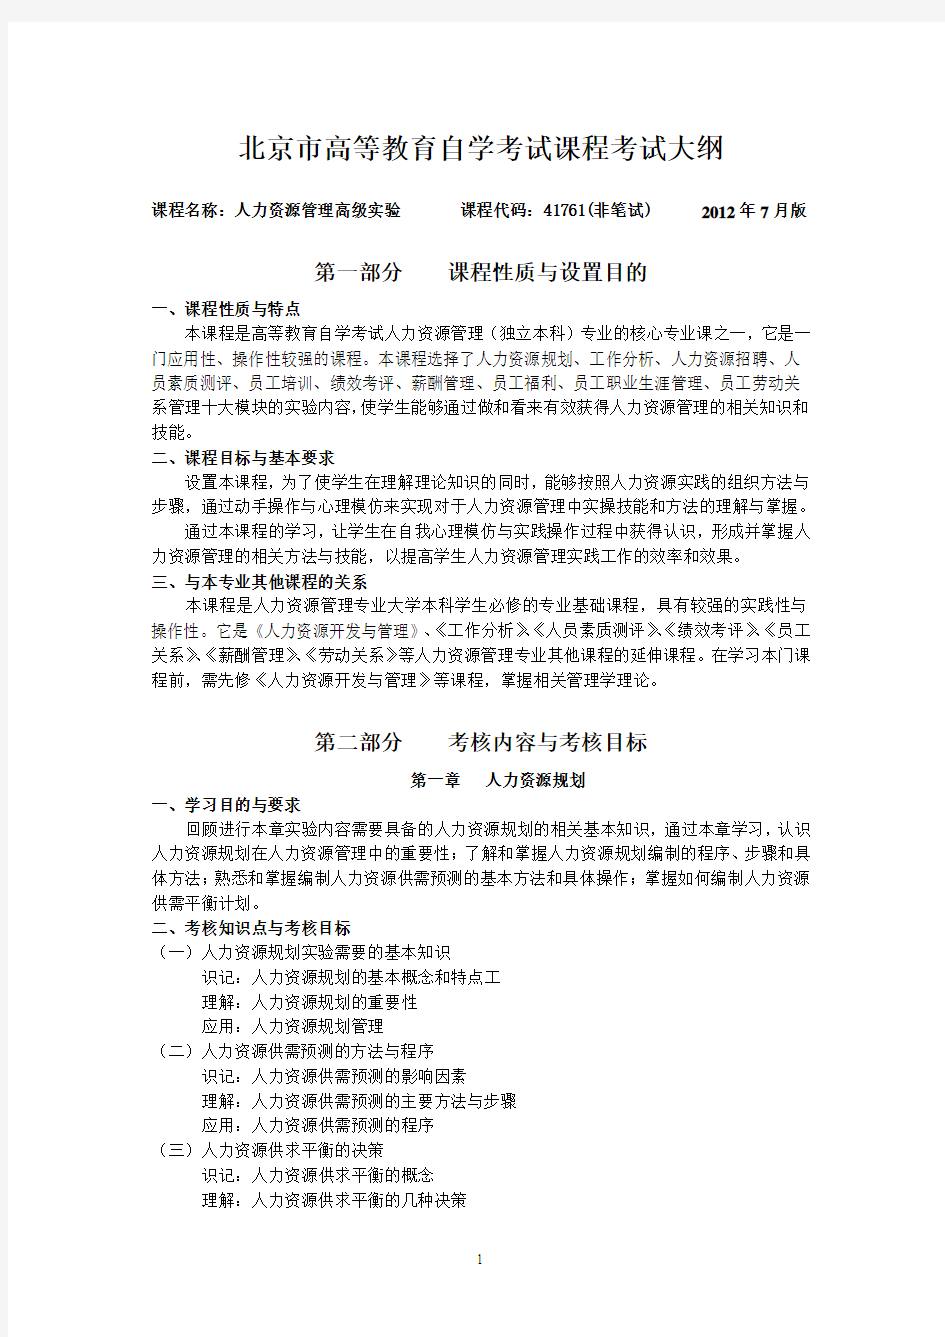 (人力资源管理高级实验)北京市高等教育自学考试课程考试大纲